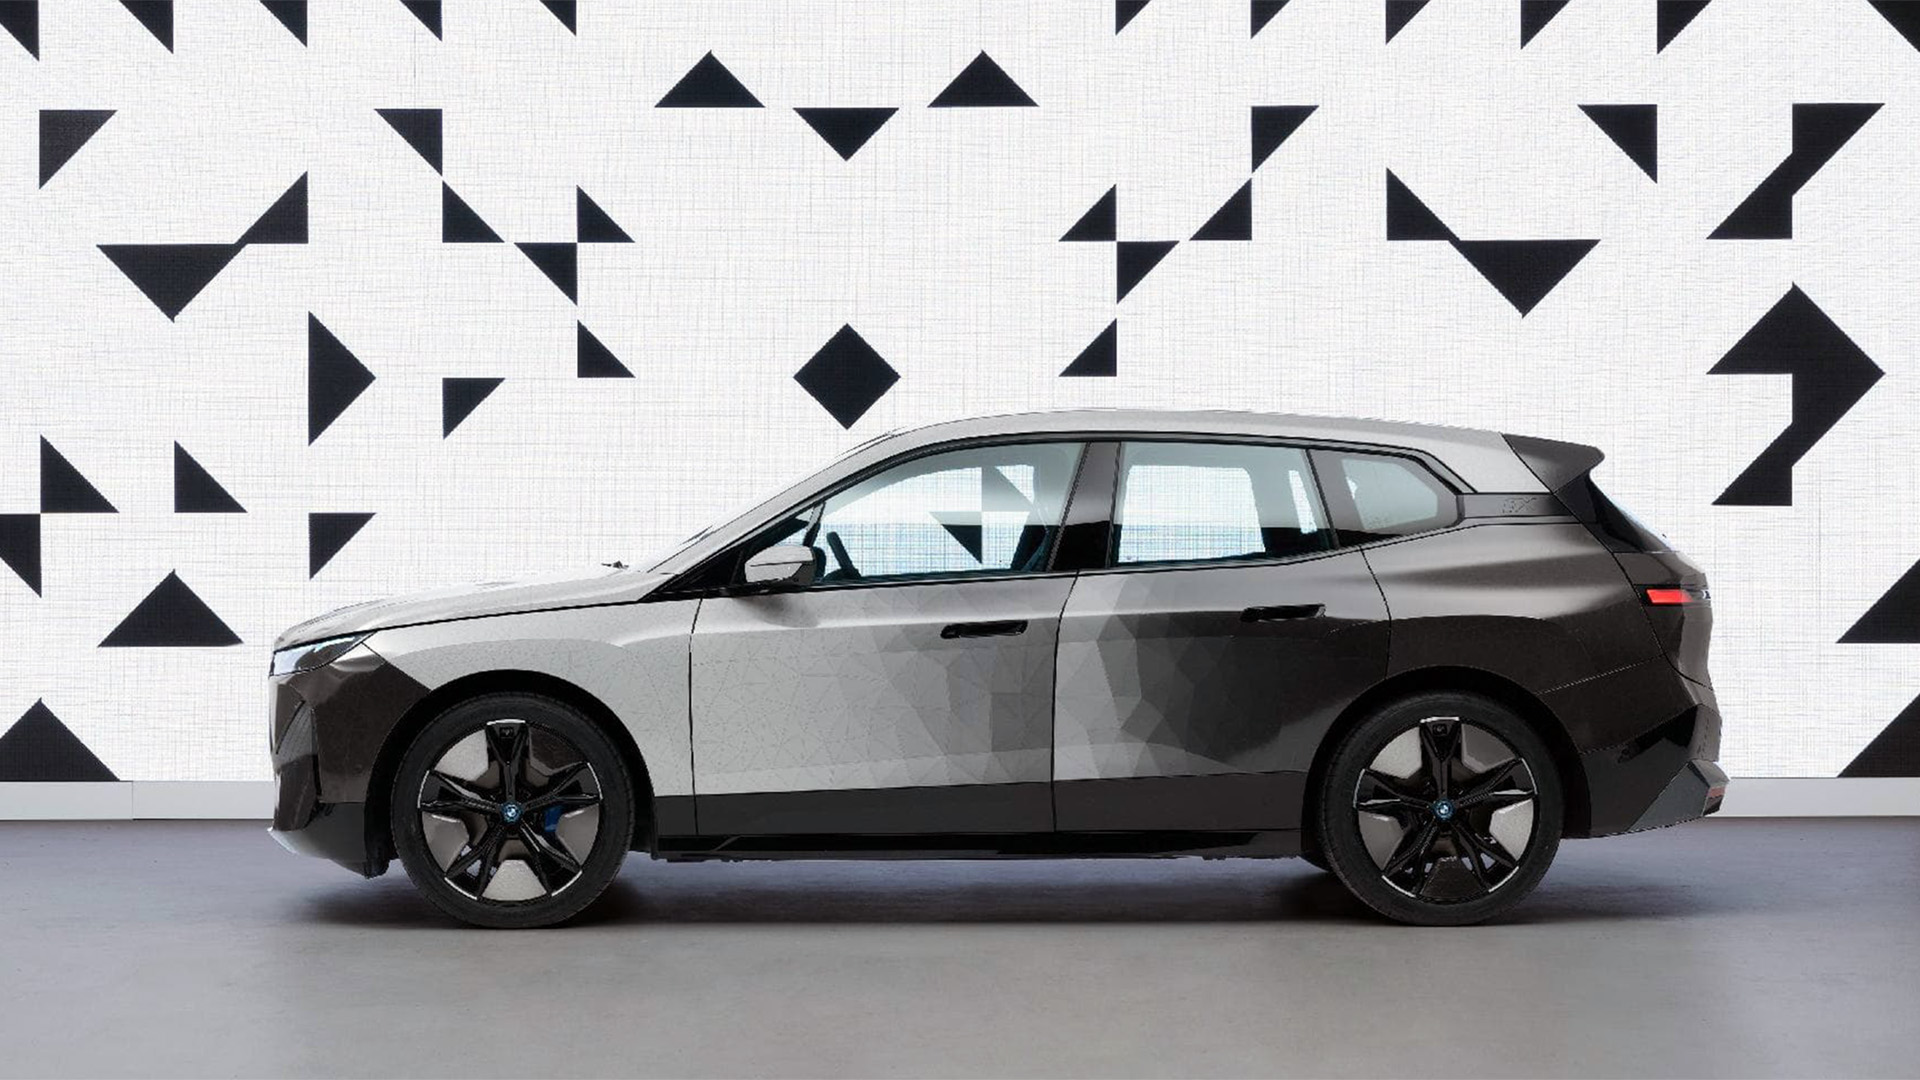 BMW presentó un sistema que cambia electrónicamente el color, pasando de negro a blanco en segundos